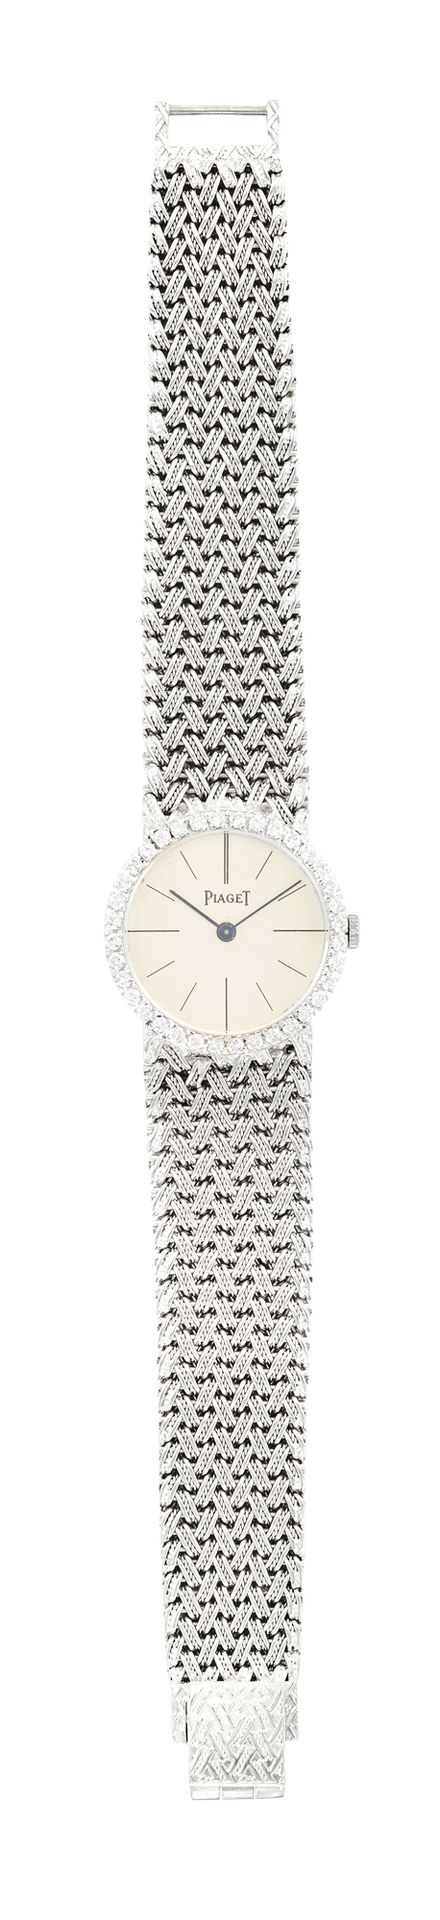 PIAGET pour HERMES PARIS Reloj femenino de oro blanco, esfera redonda, bisel eng&hellip;